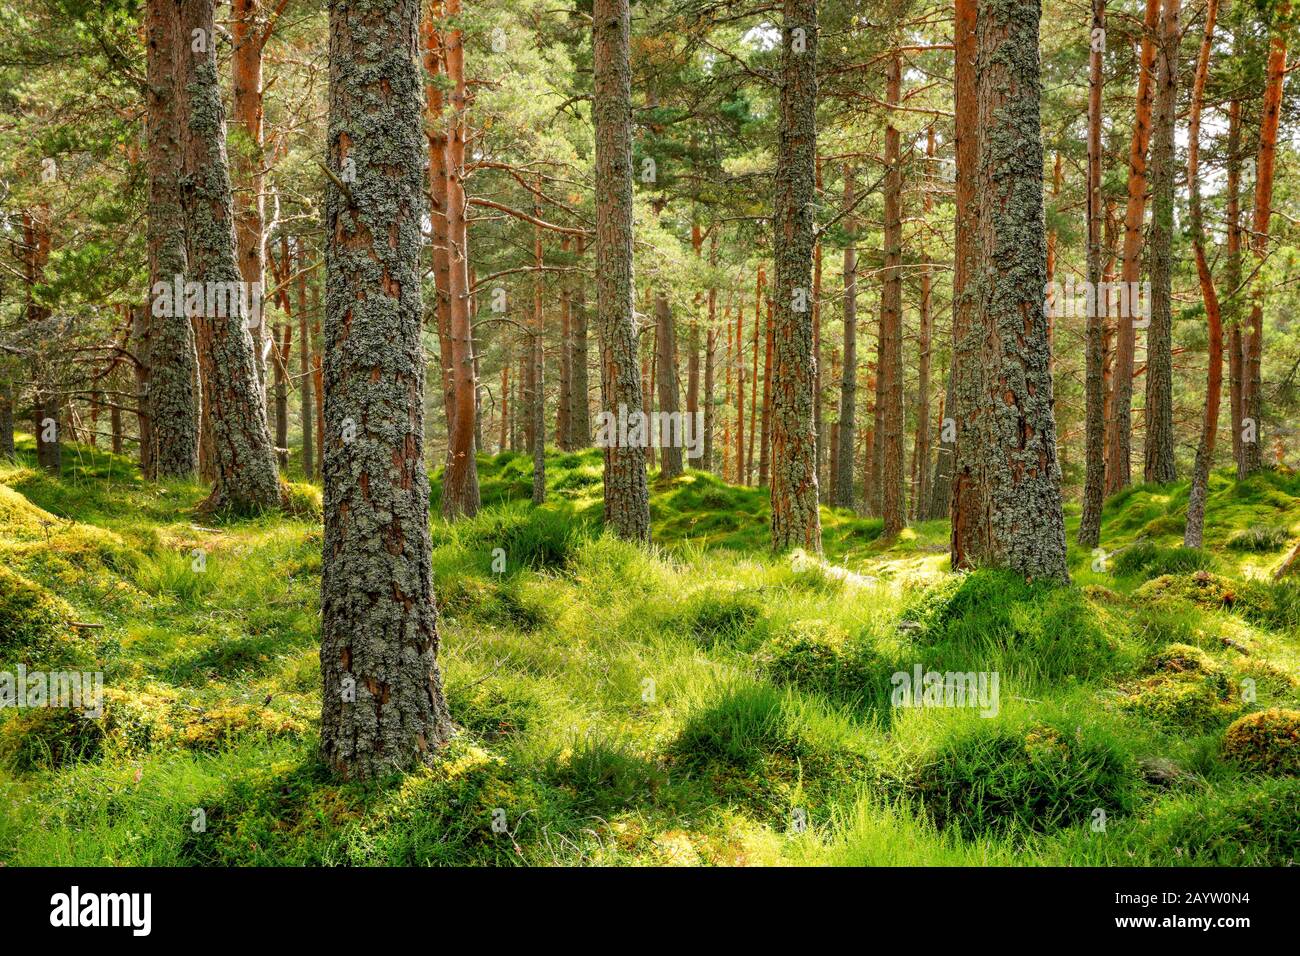 Pino escocés, pino escocés (Pinus sylvestris), madera de pino con brezo, Suiza Foto de stock